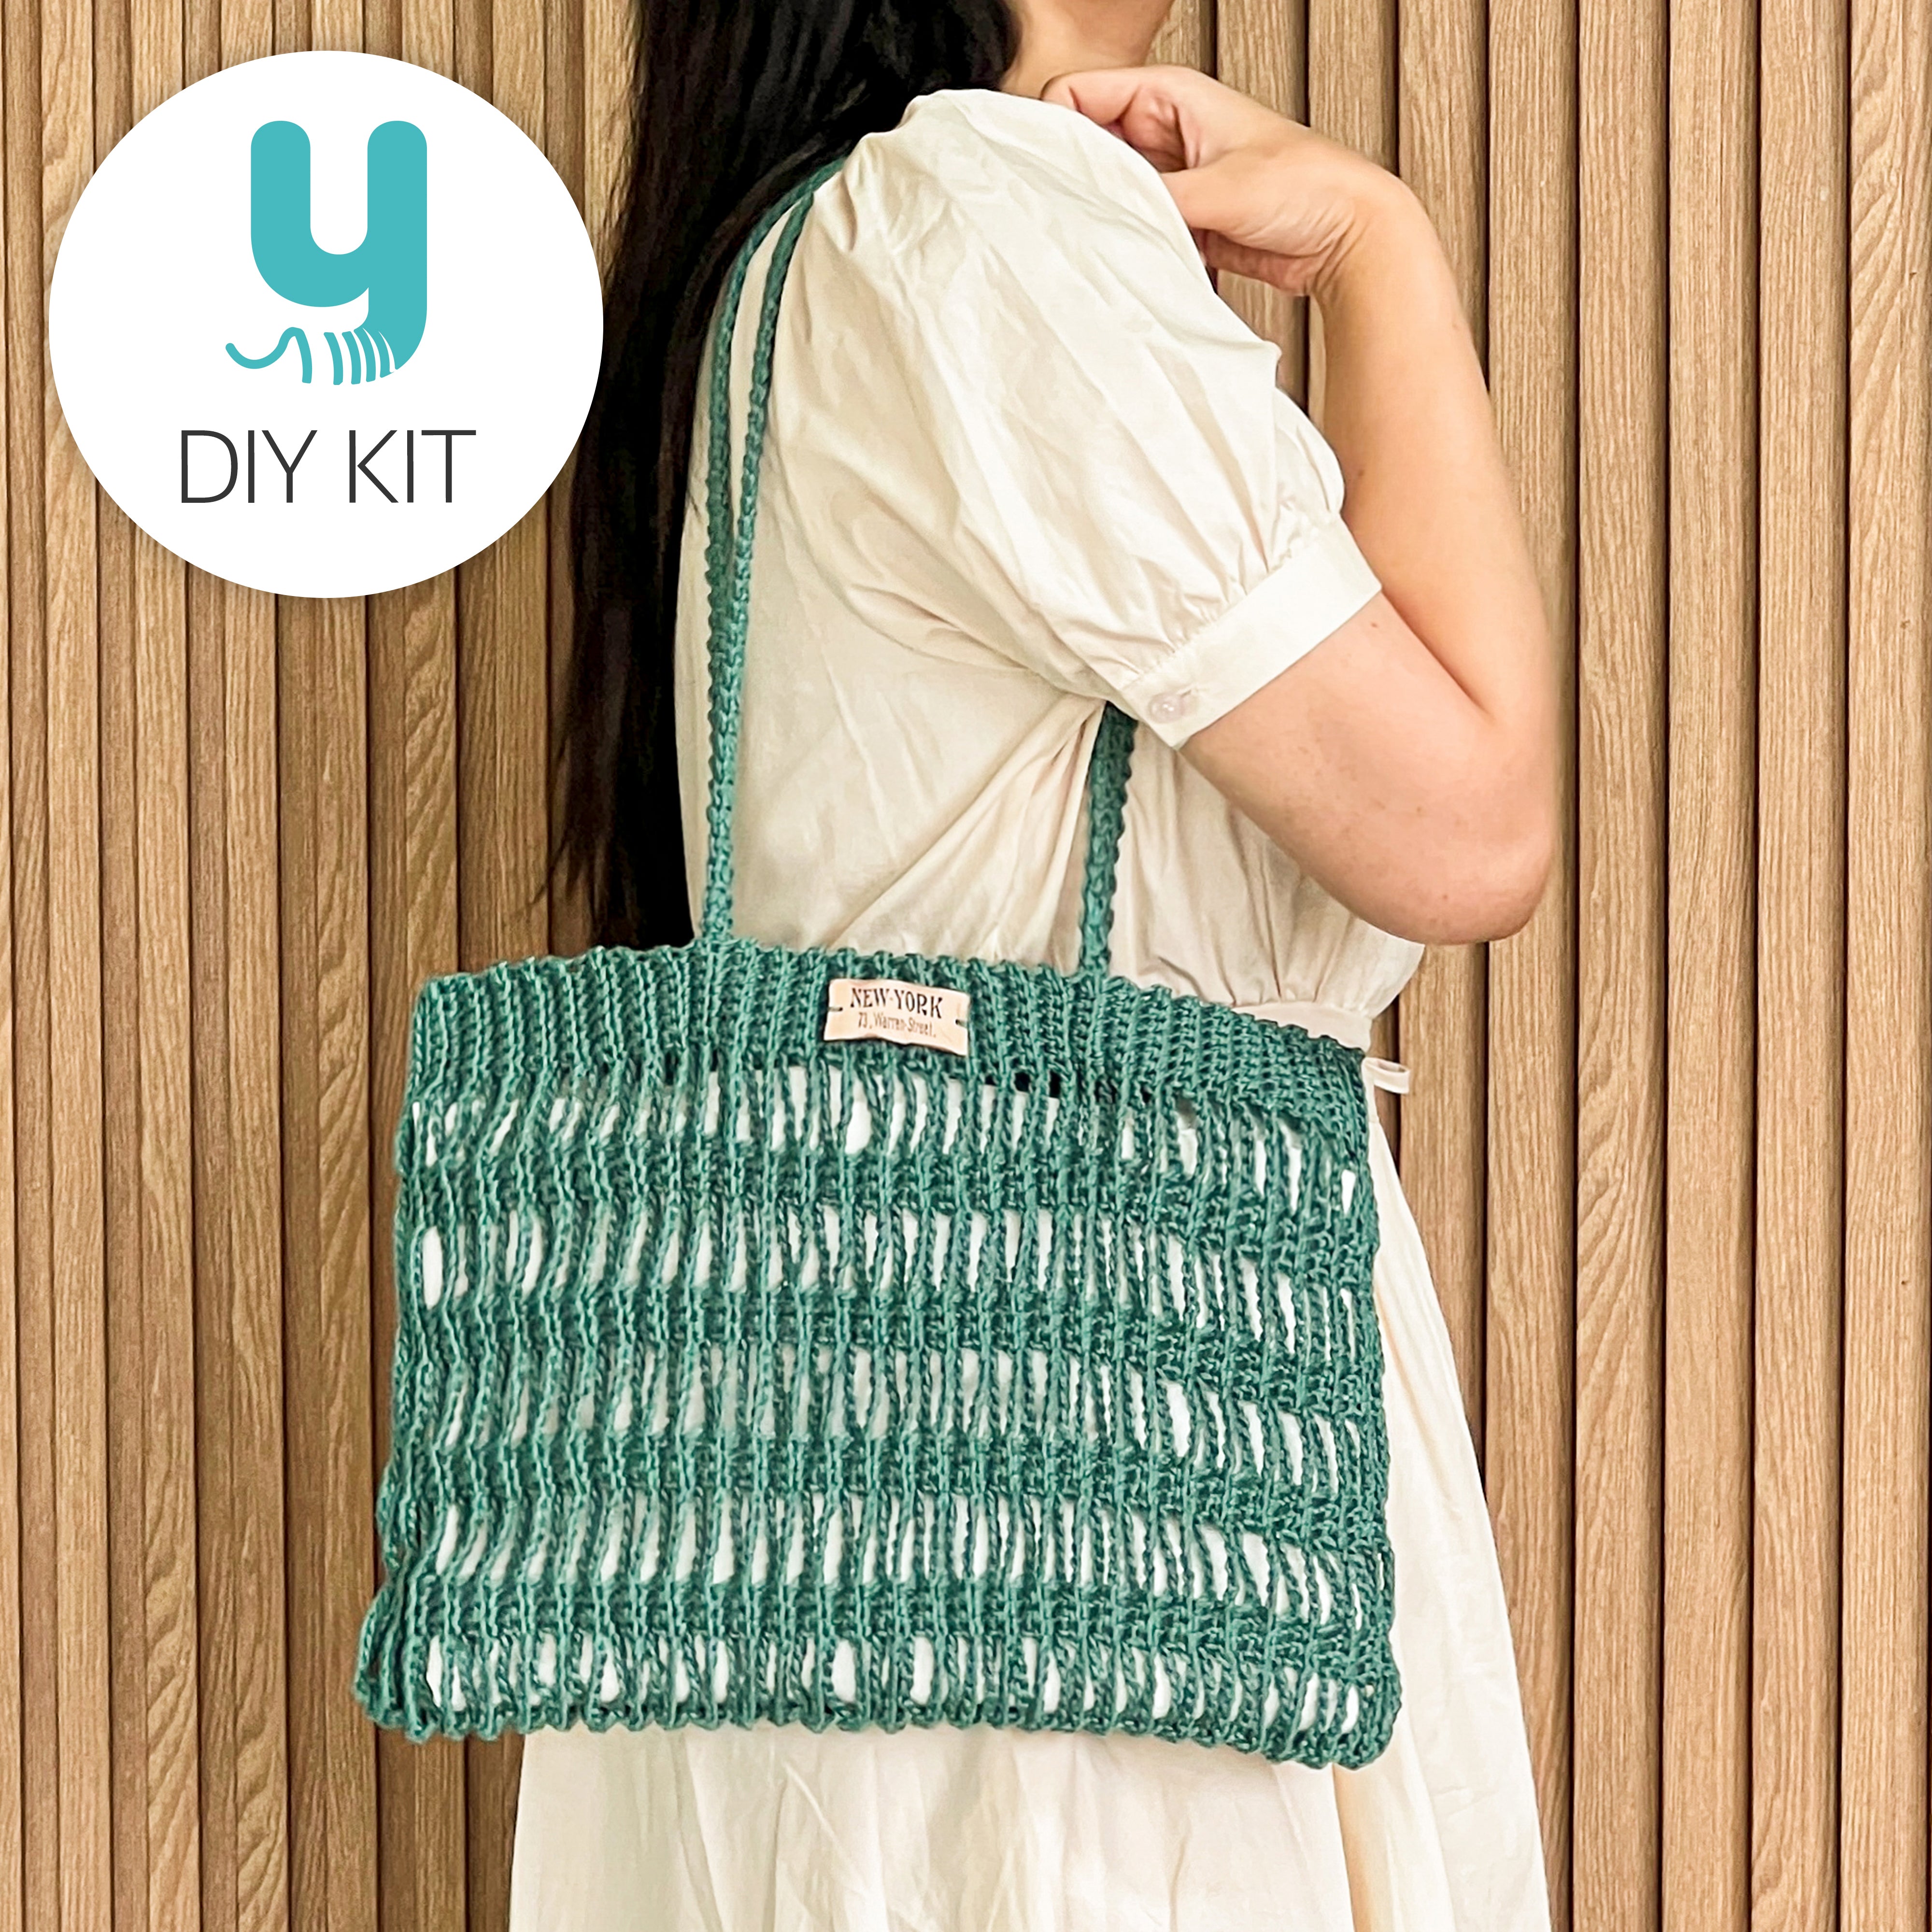 DIY : Crocheted Tote Bag